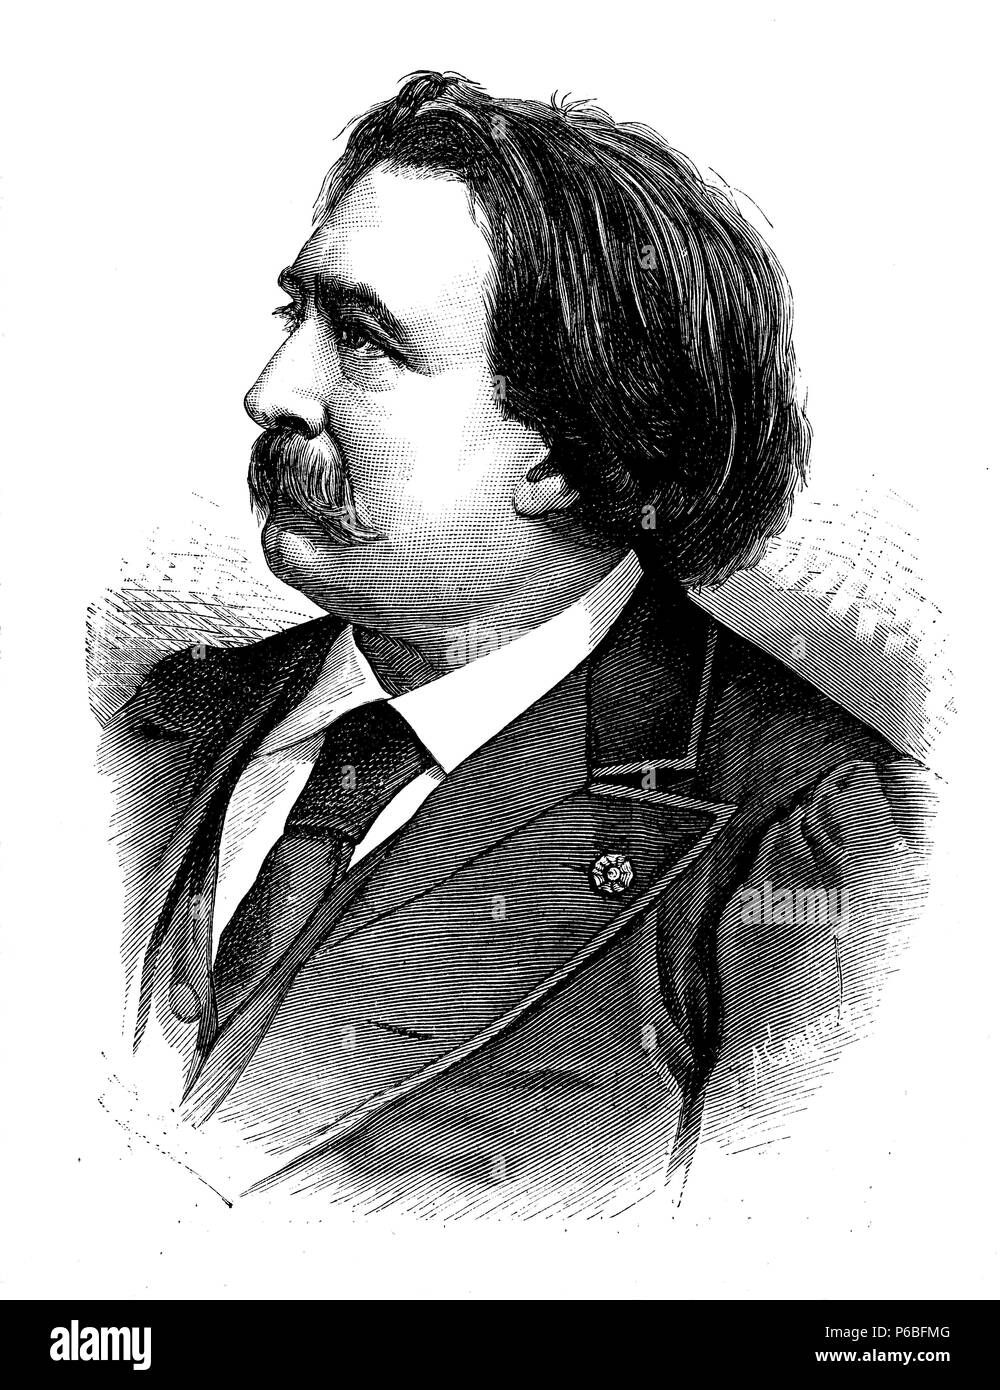 Gustavo Doré (1833-1883), dibujante, pintor y escultor francés. Grabado de 1883. Foto Stock